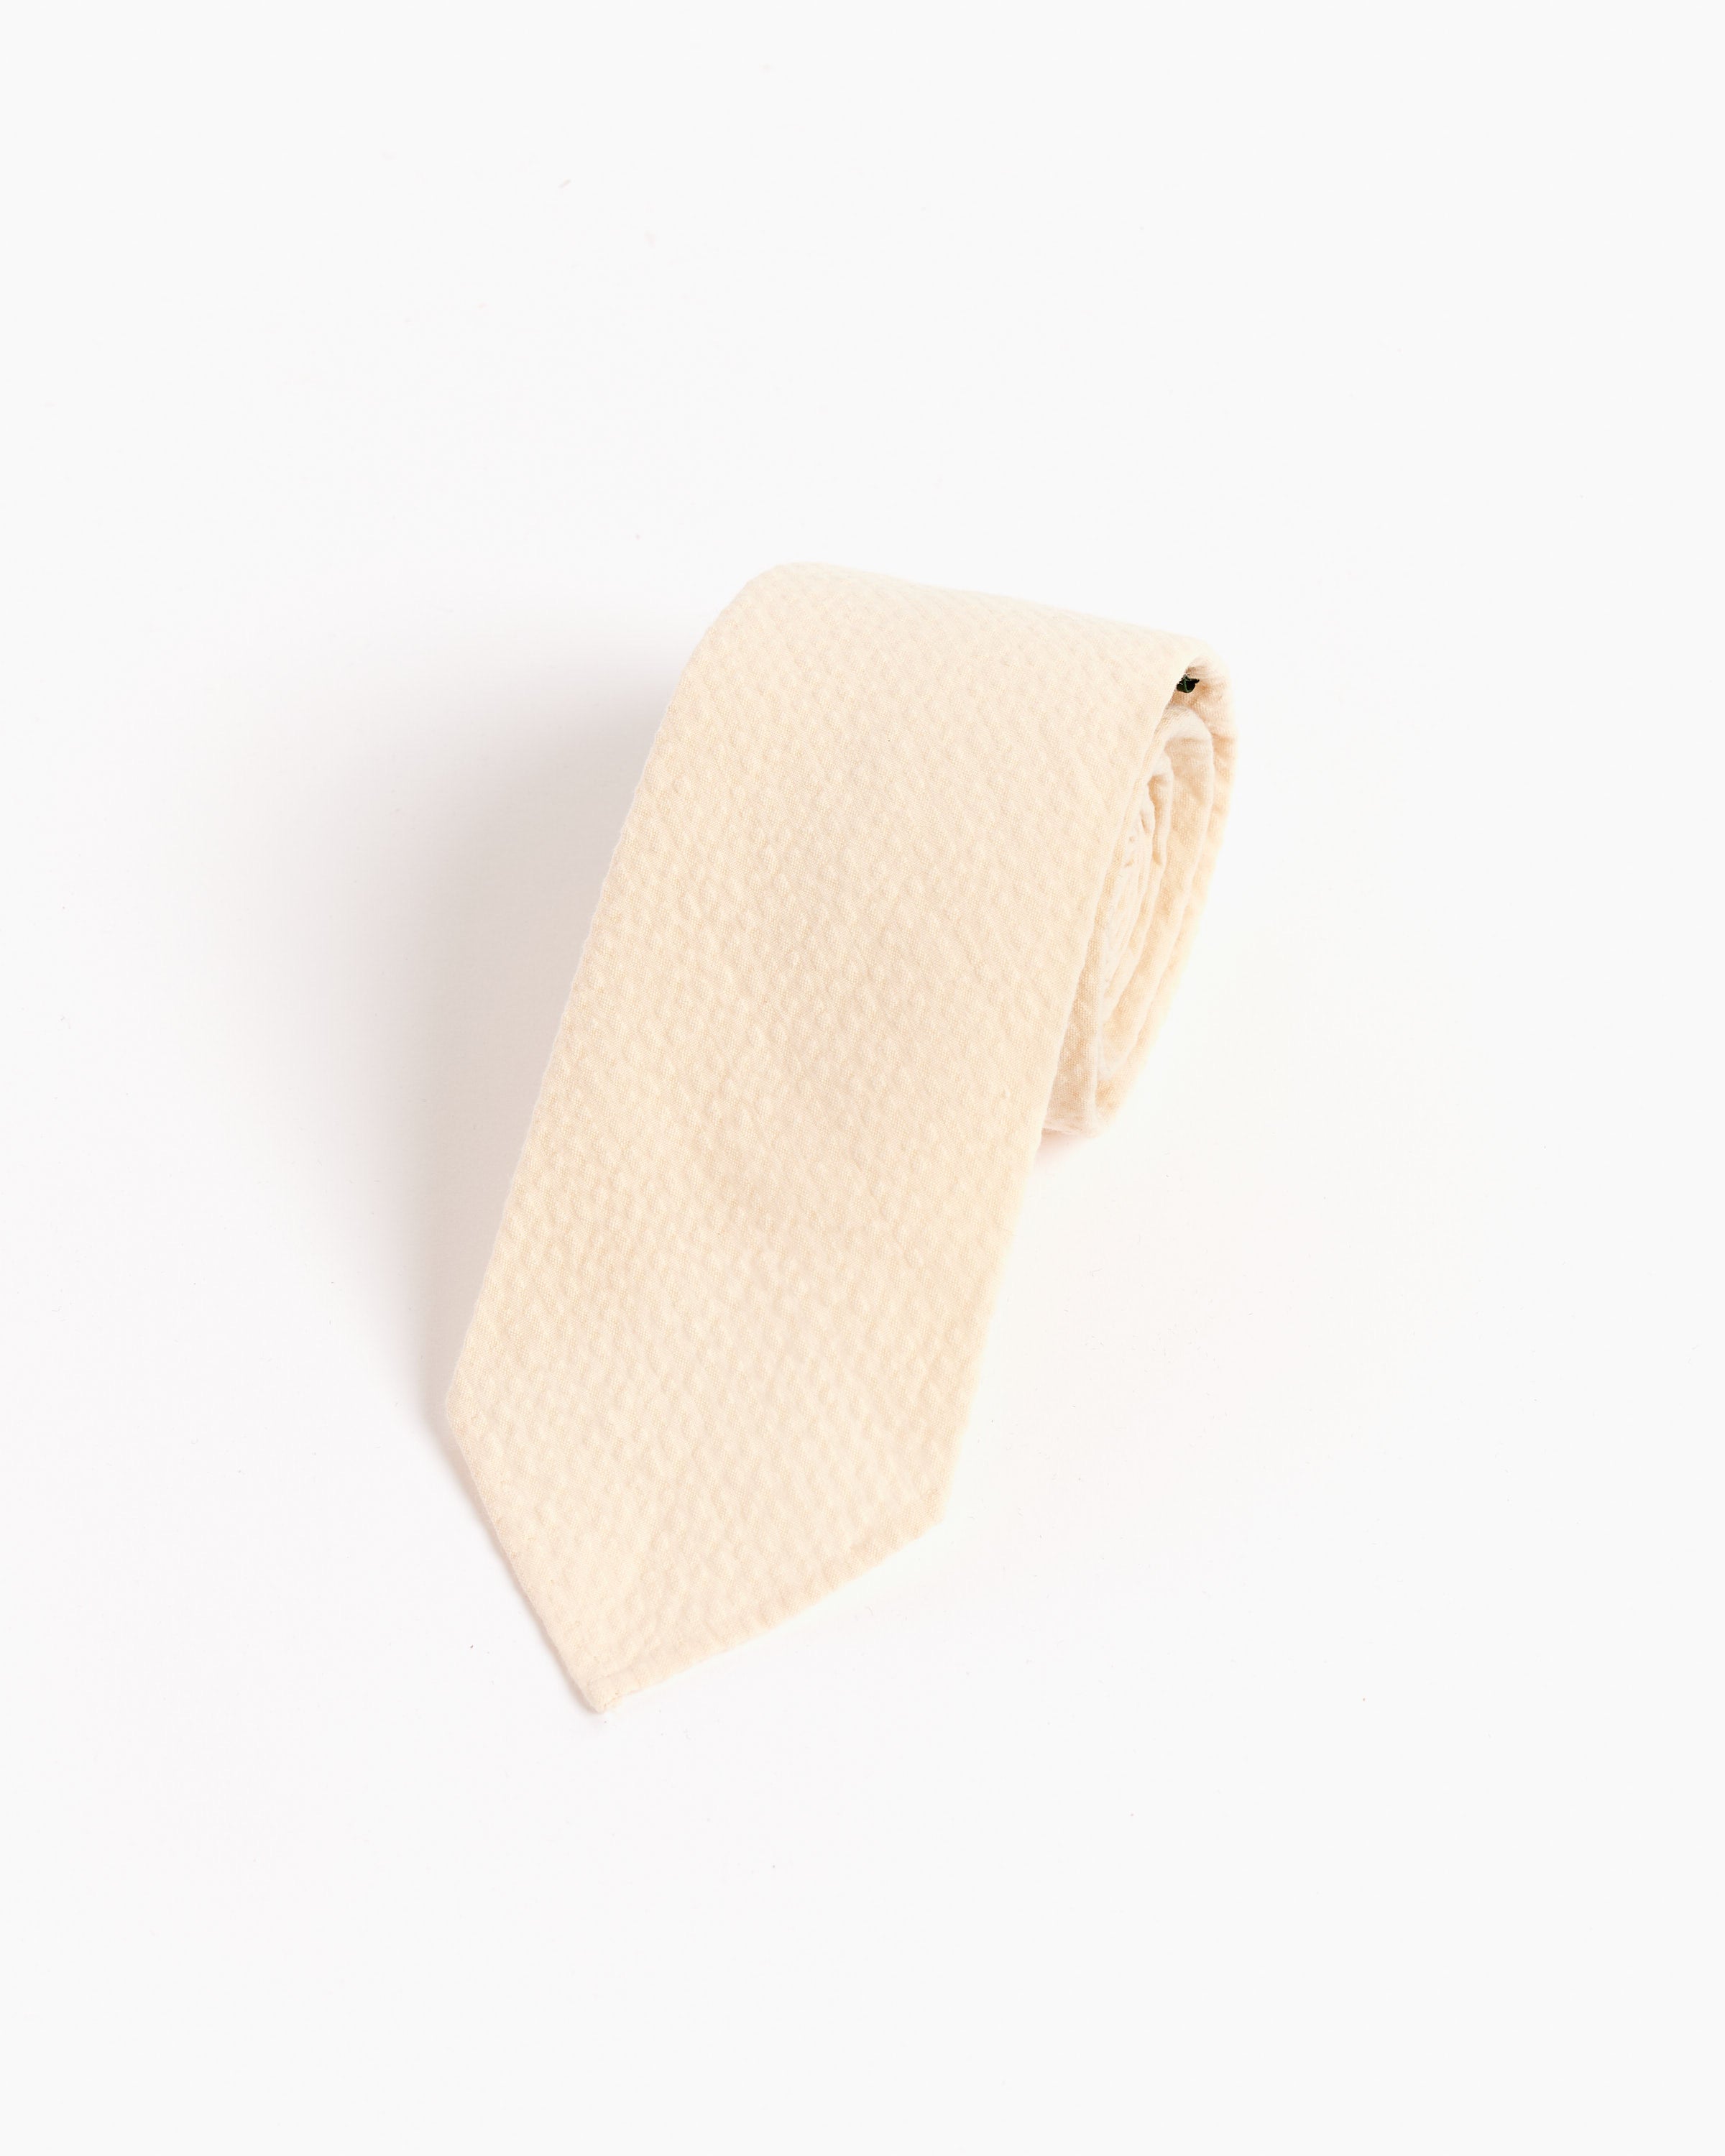 SMOCK x Gitman Vintage Tie in Seersucker in Cream